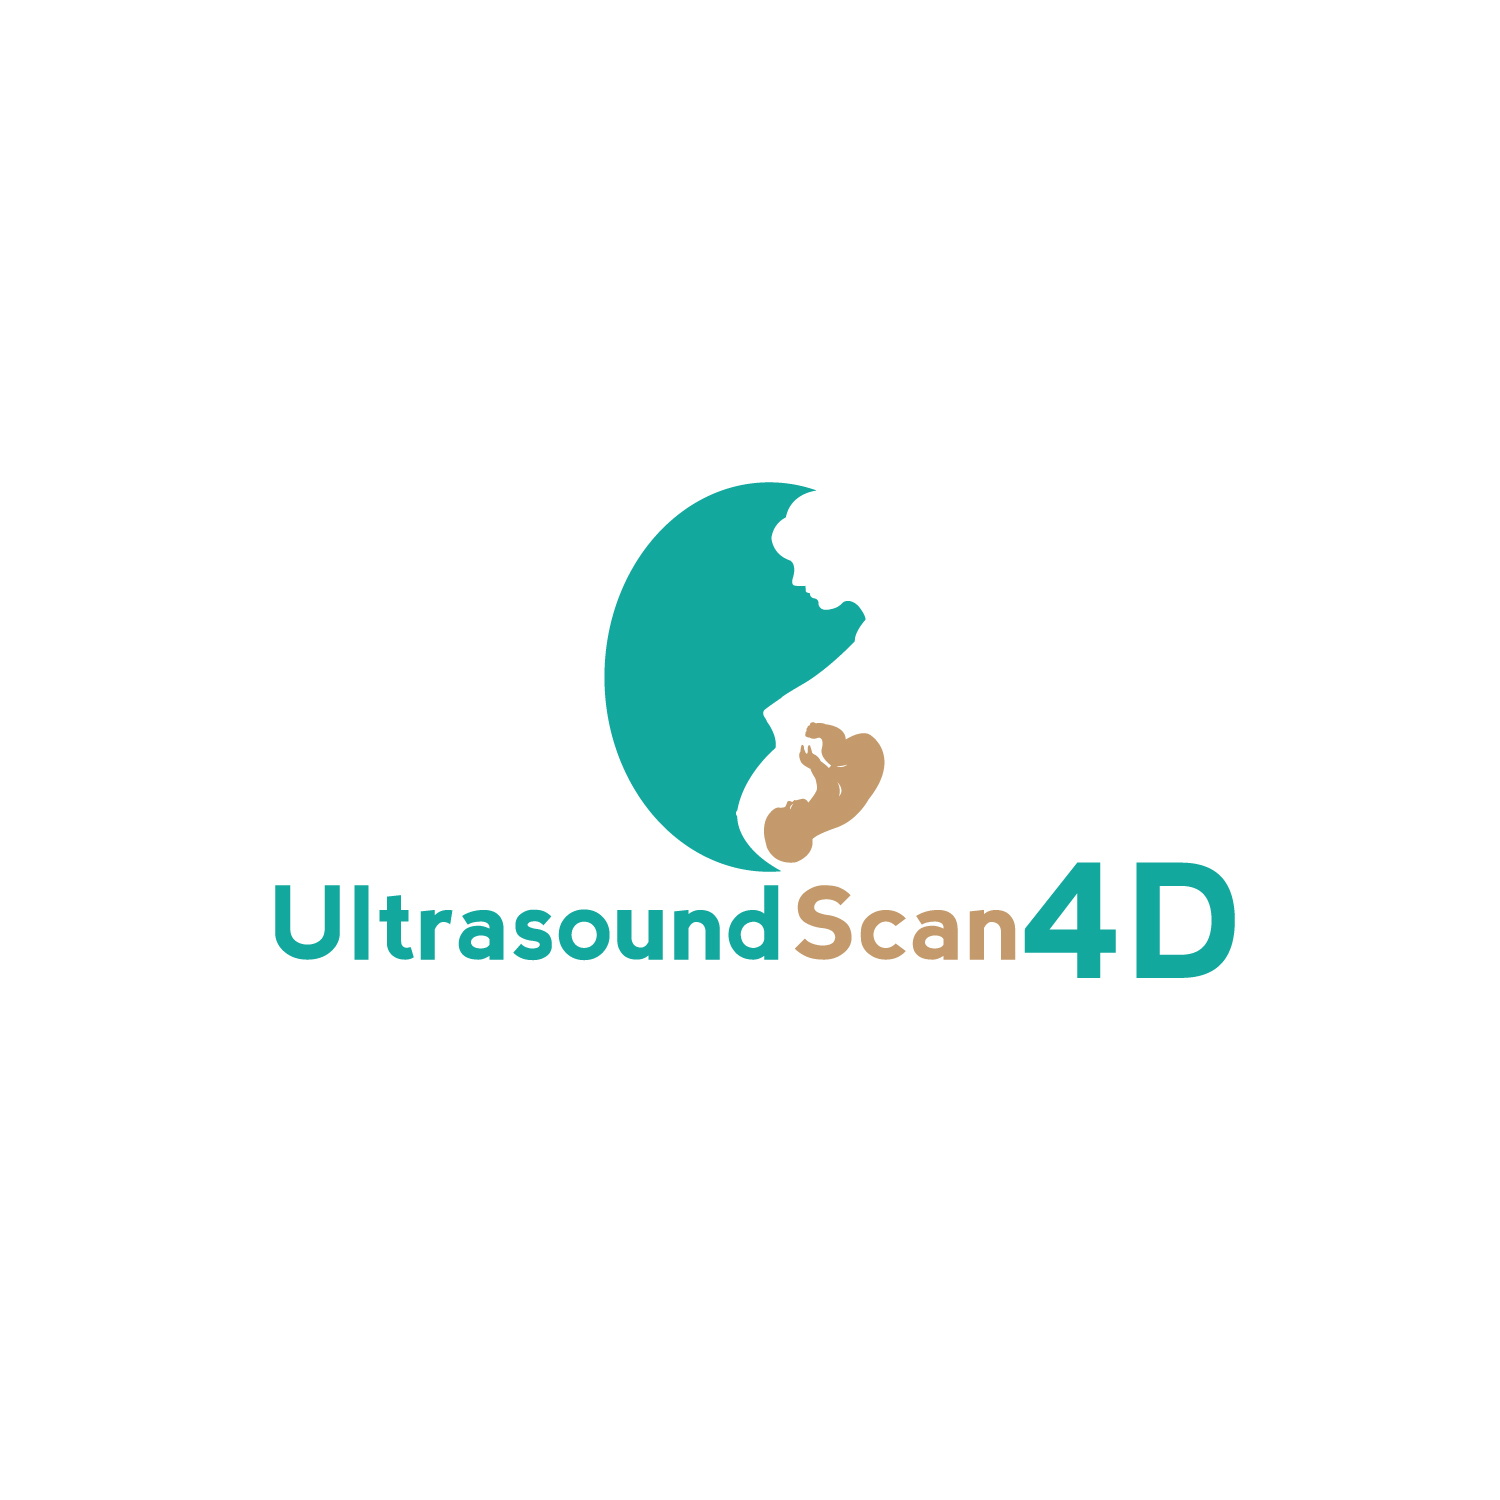 4D Logo - Logo Design Contests » Ultrasound Scan 4D Logo Design » Design ...